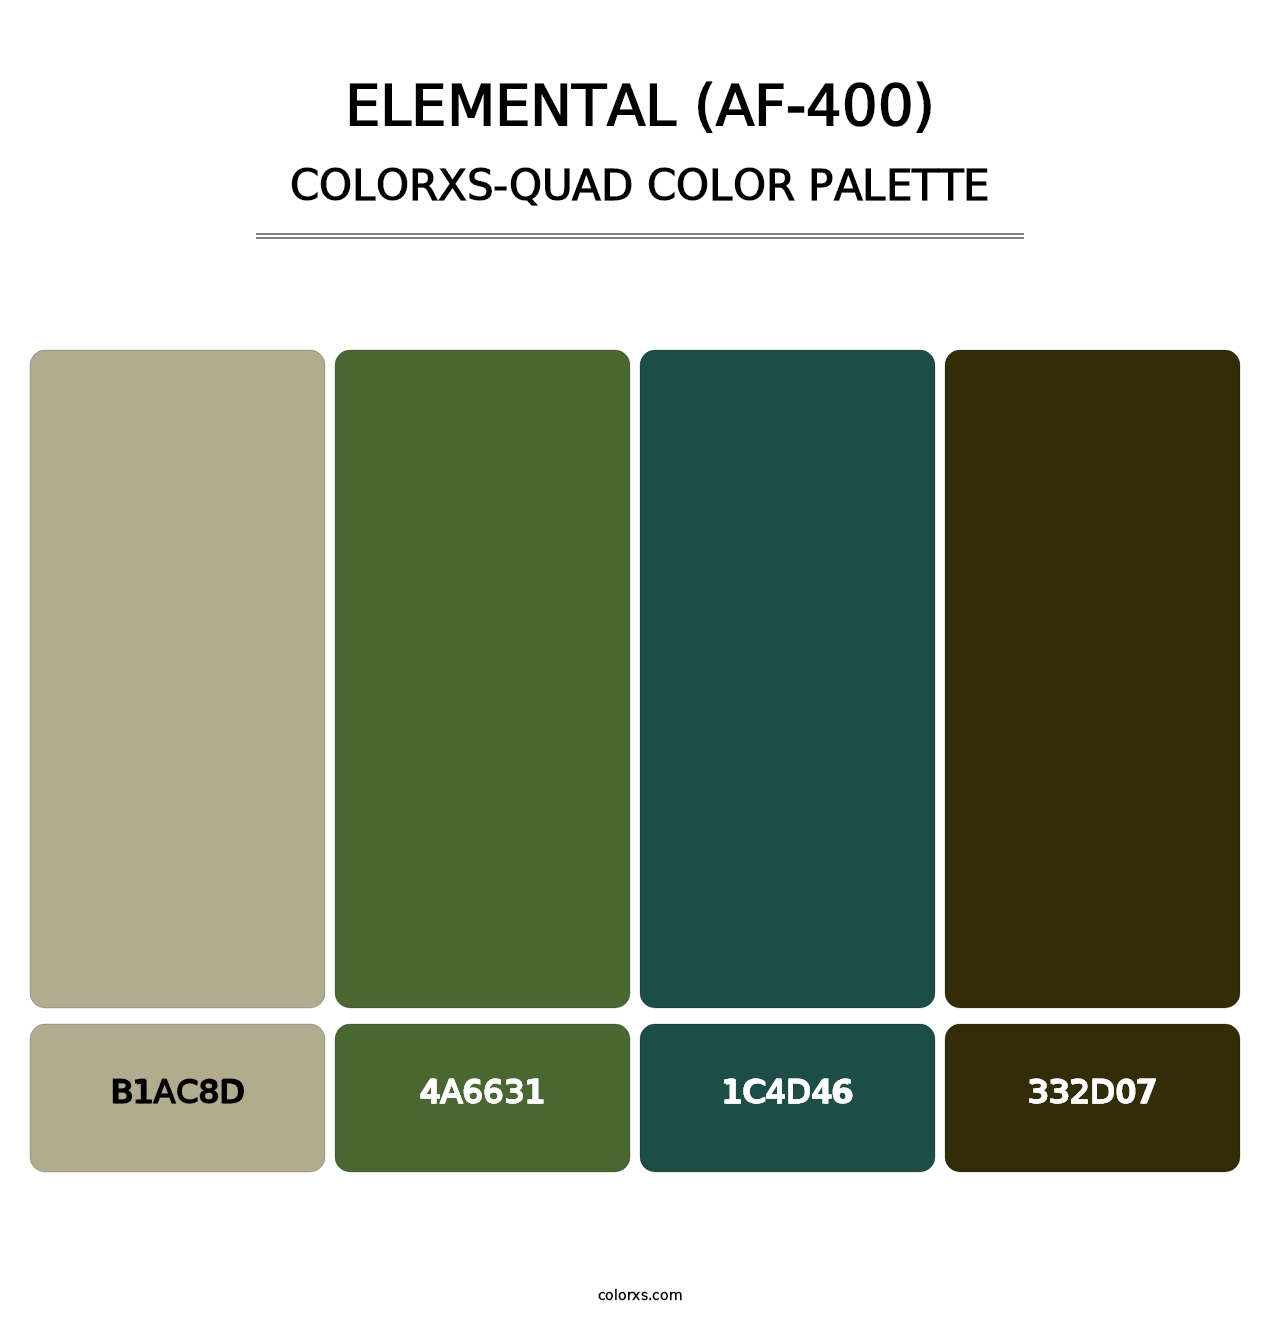 Elemental (AF-400) - Colorxs Quad Palette